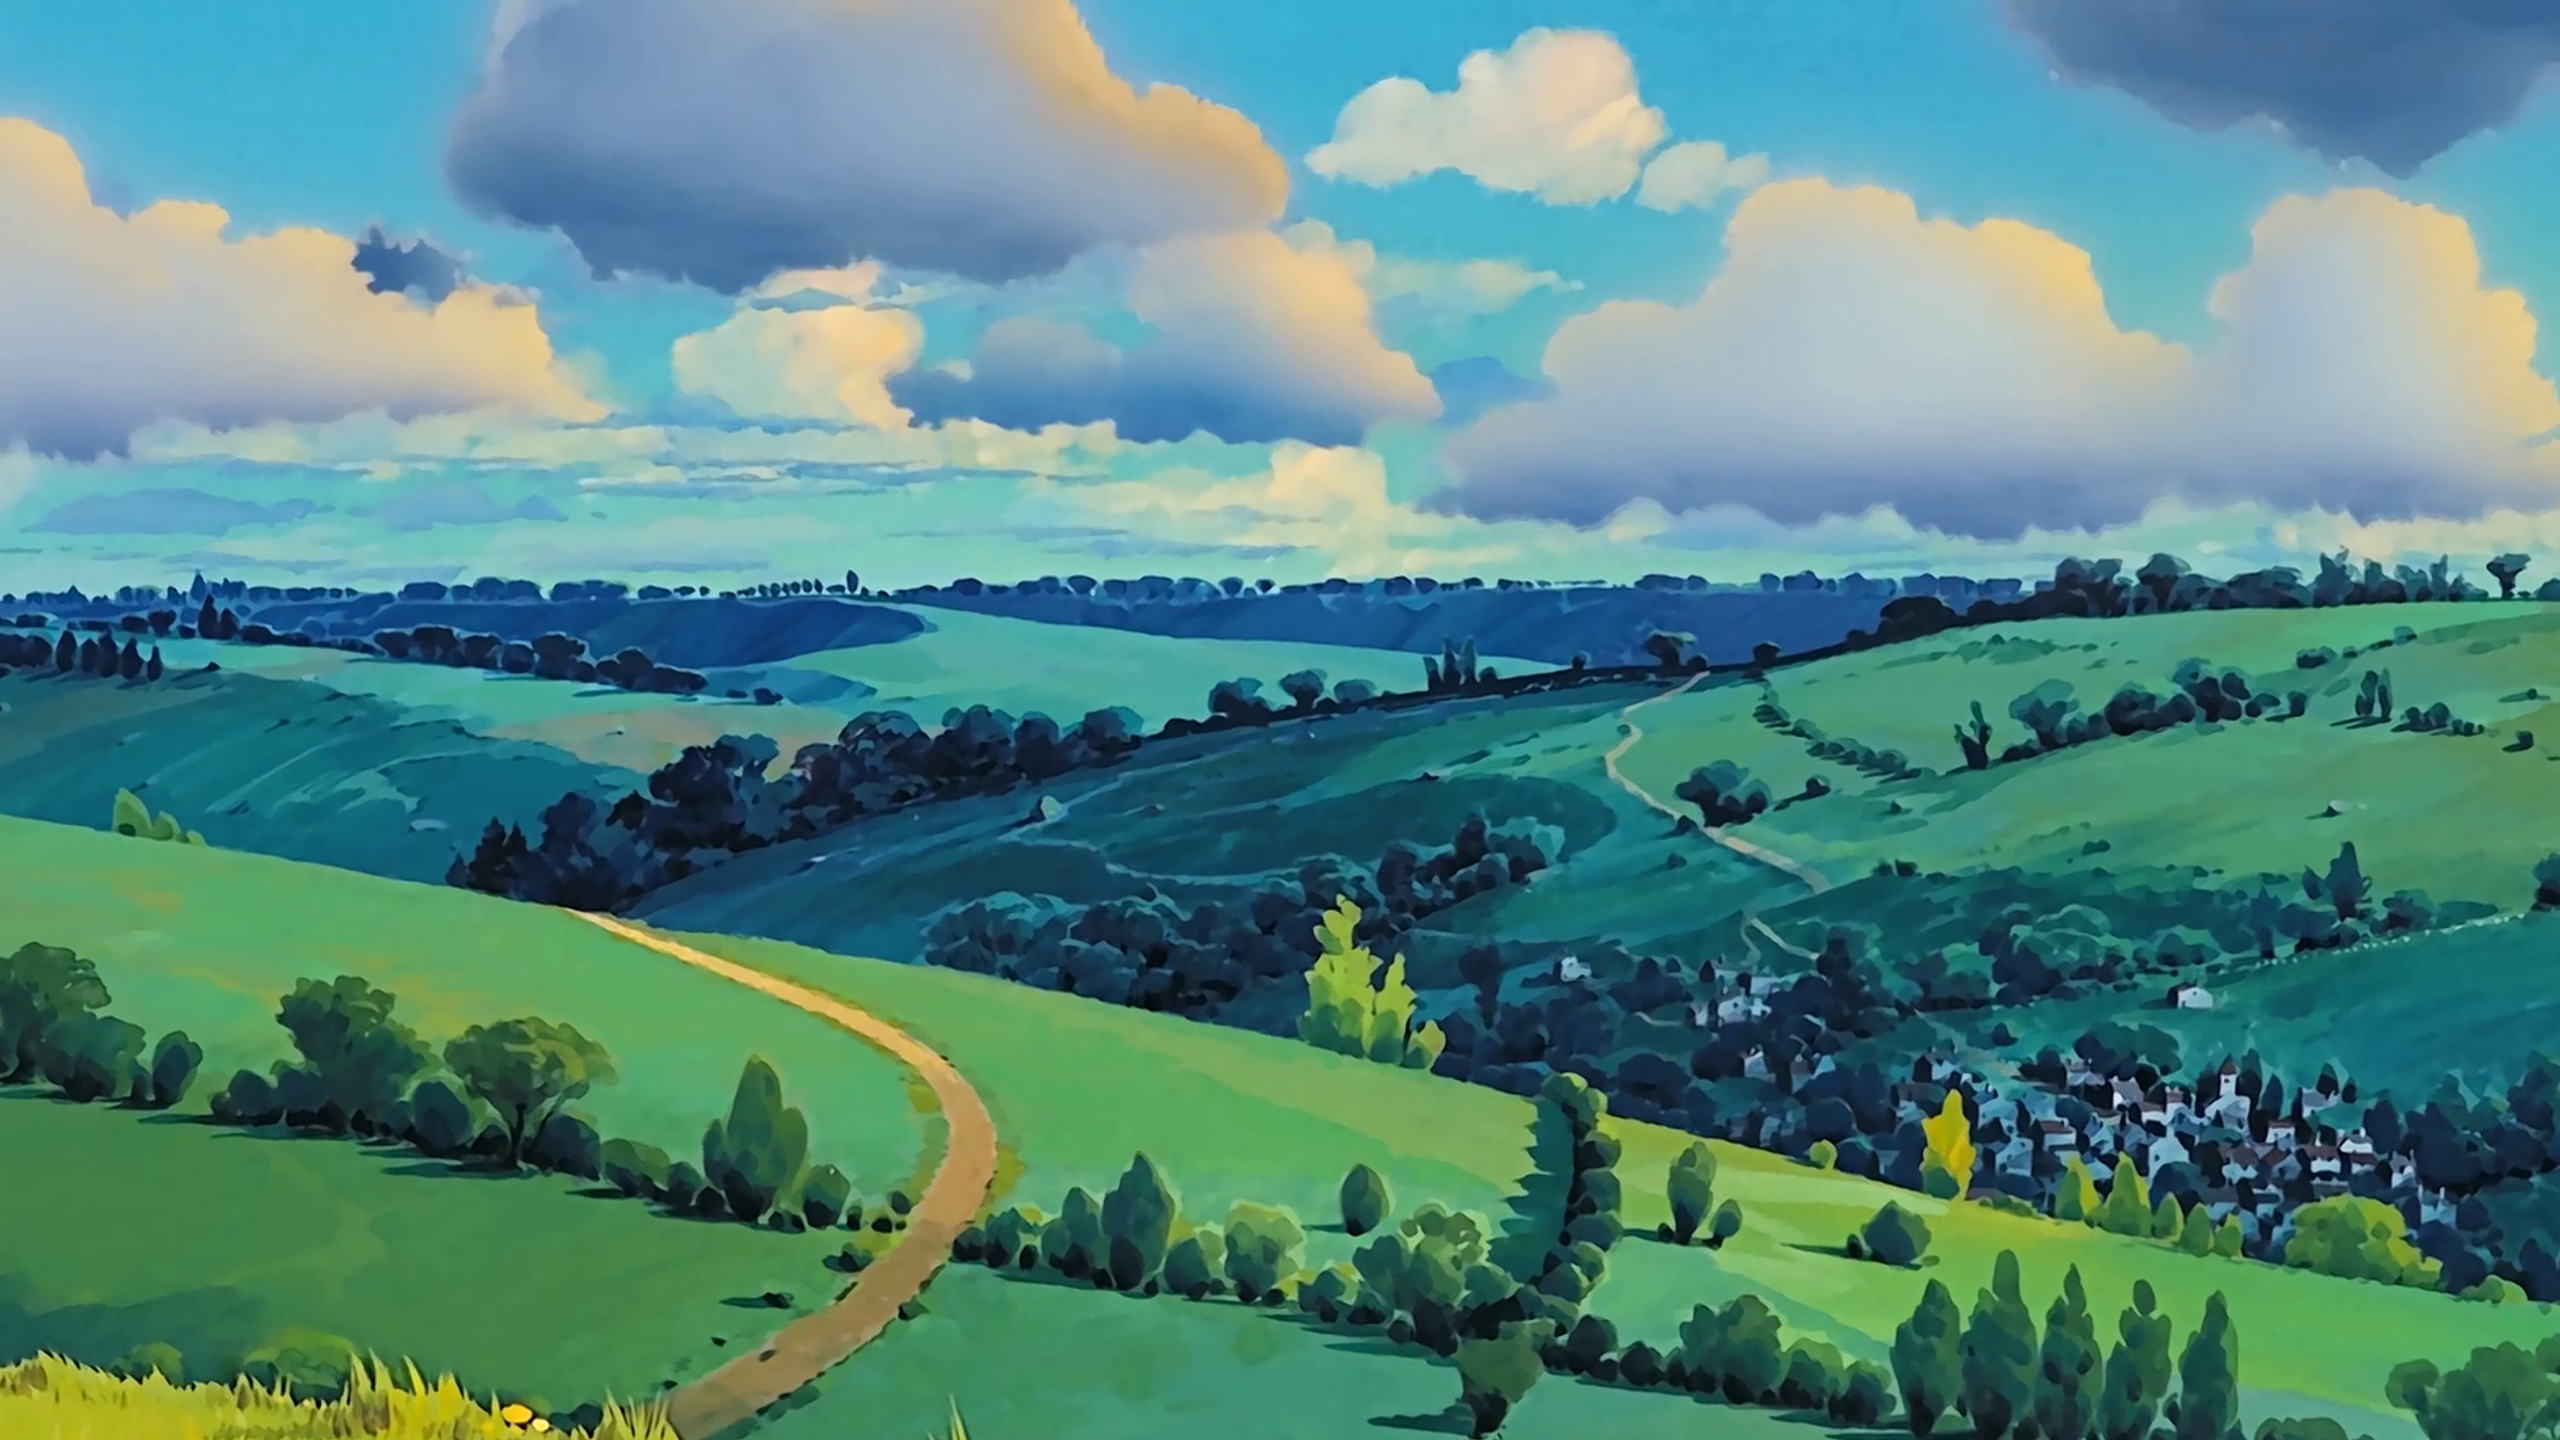 2560x1440 100 Studio Ghibli wallpapers Imgur | Studio ghibli background, Anime scenery, Ghibli artwork